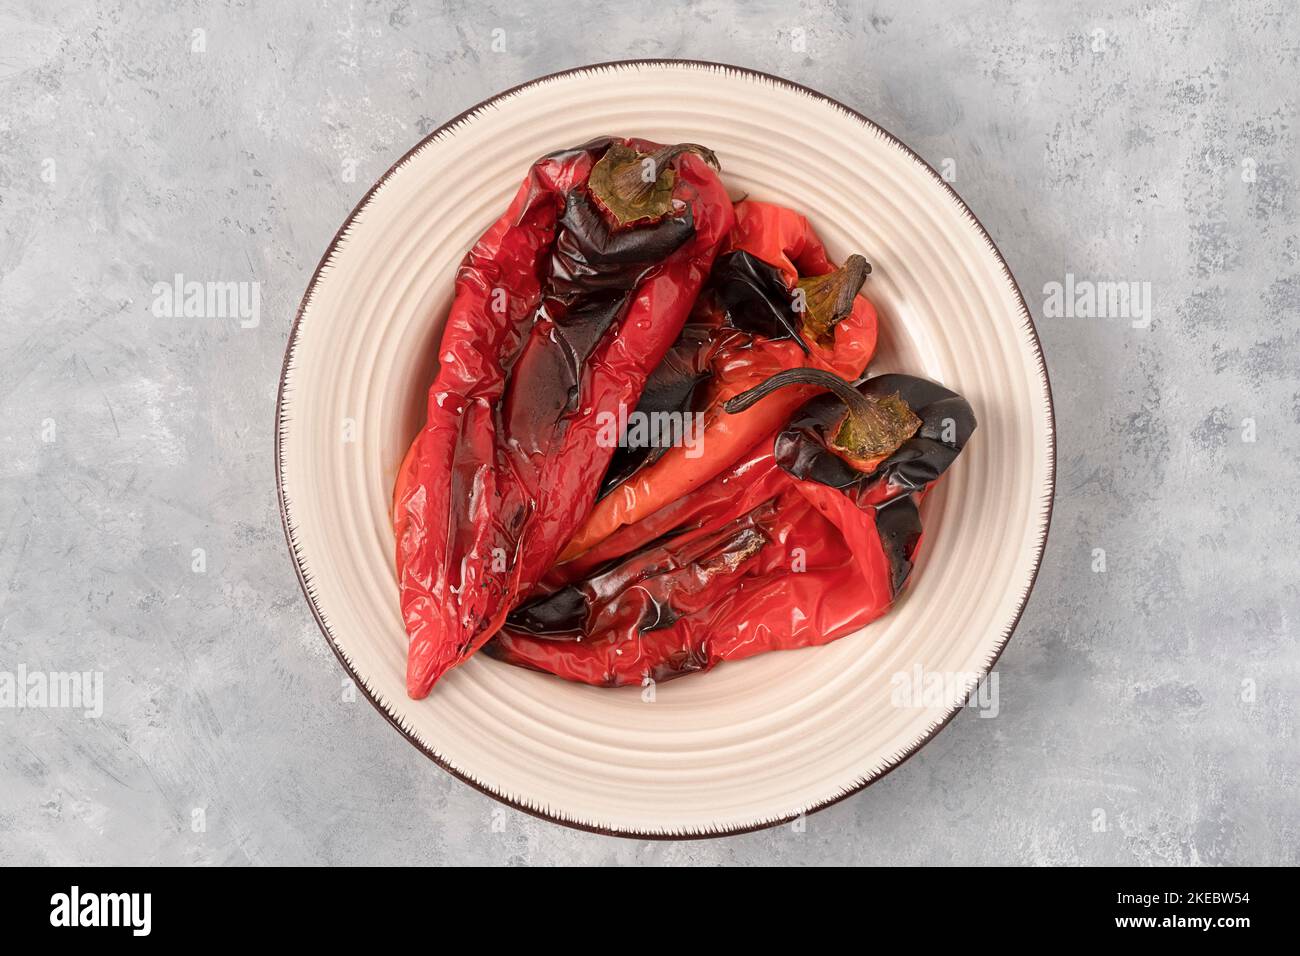 Vue de dessus des poivrons rouges rôtis, cuisine balkanique Banque D'Images